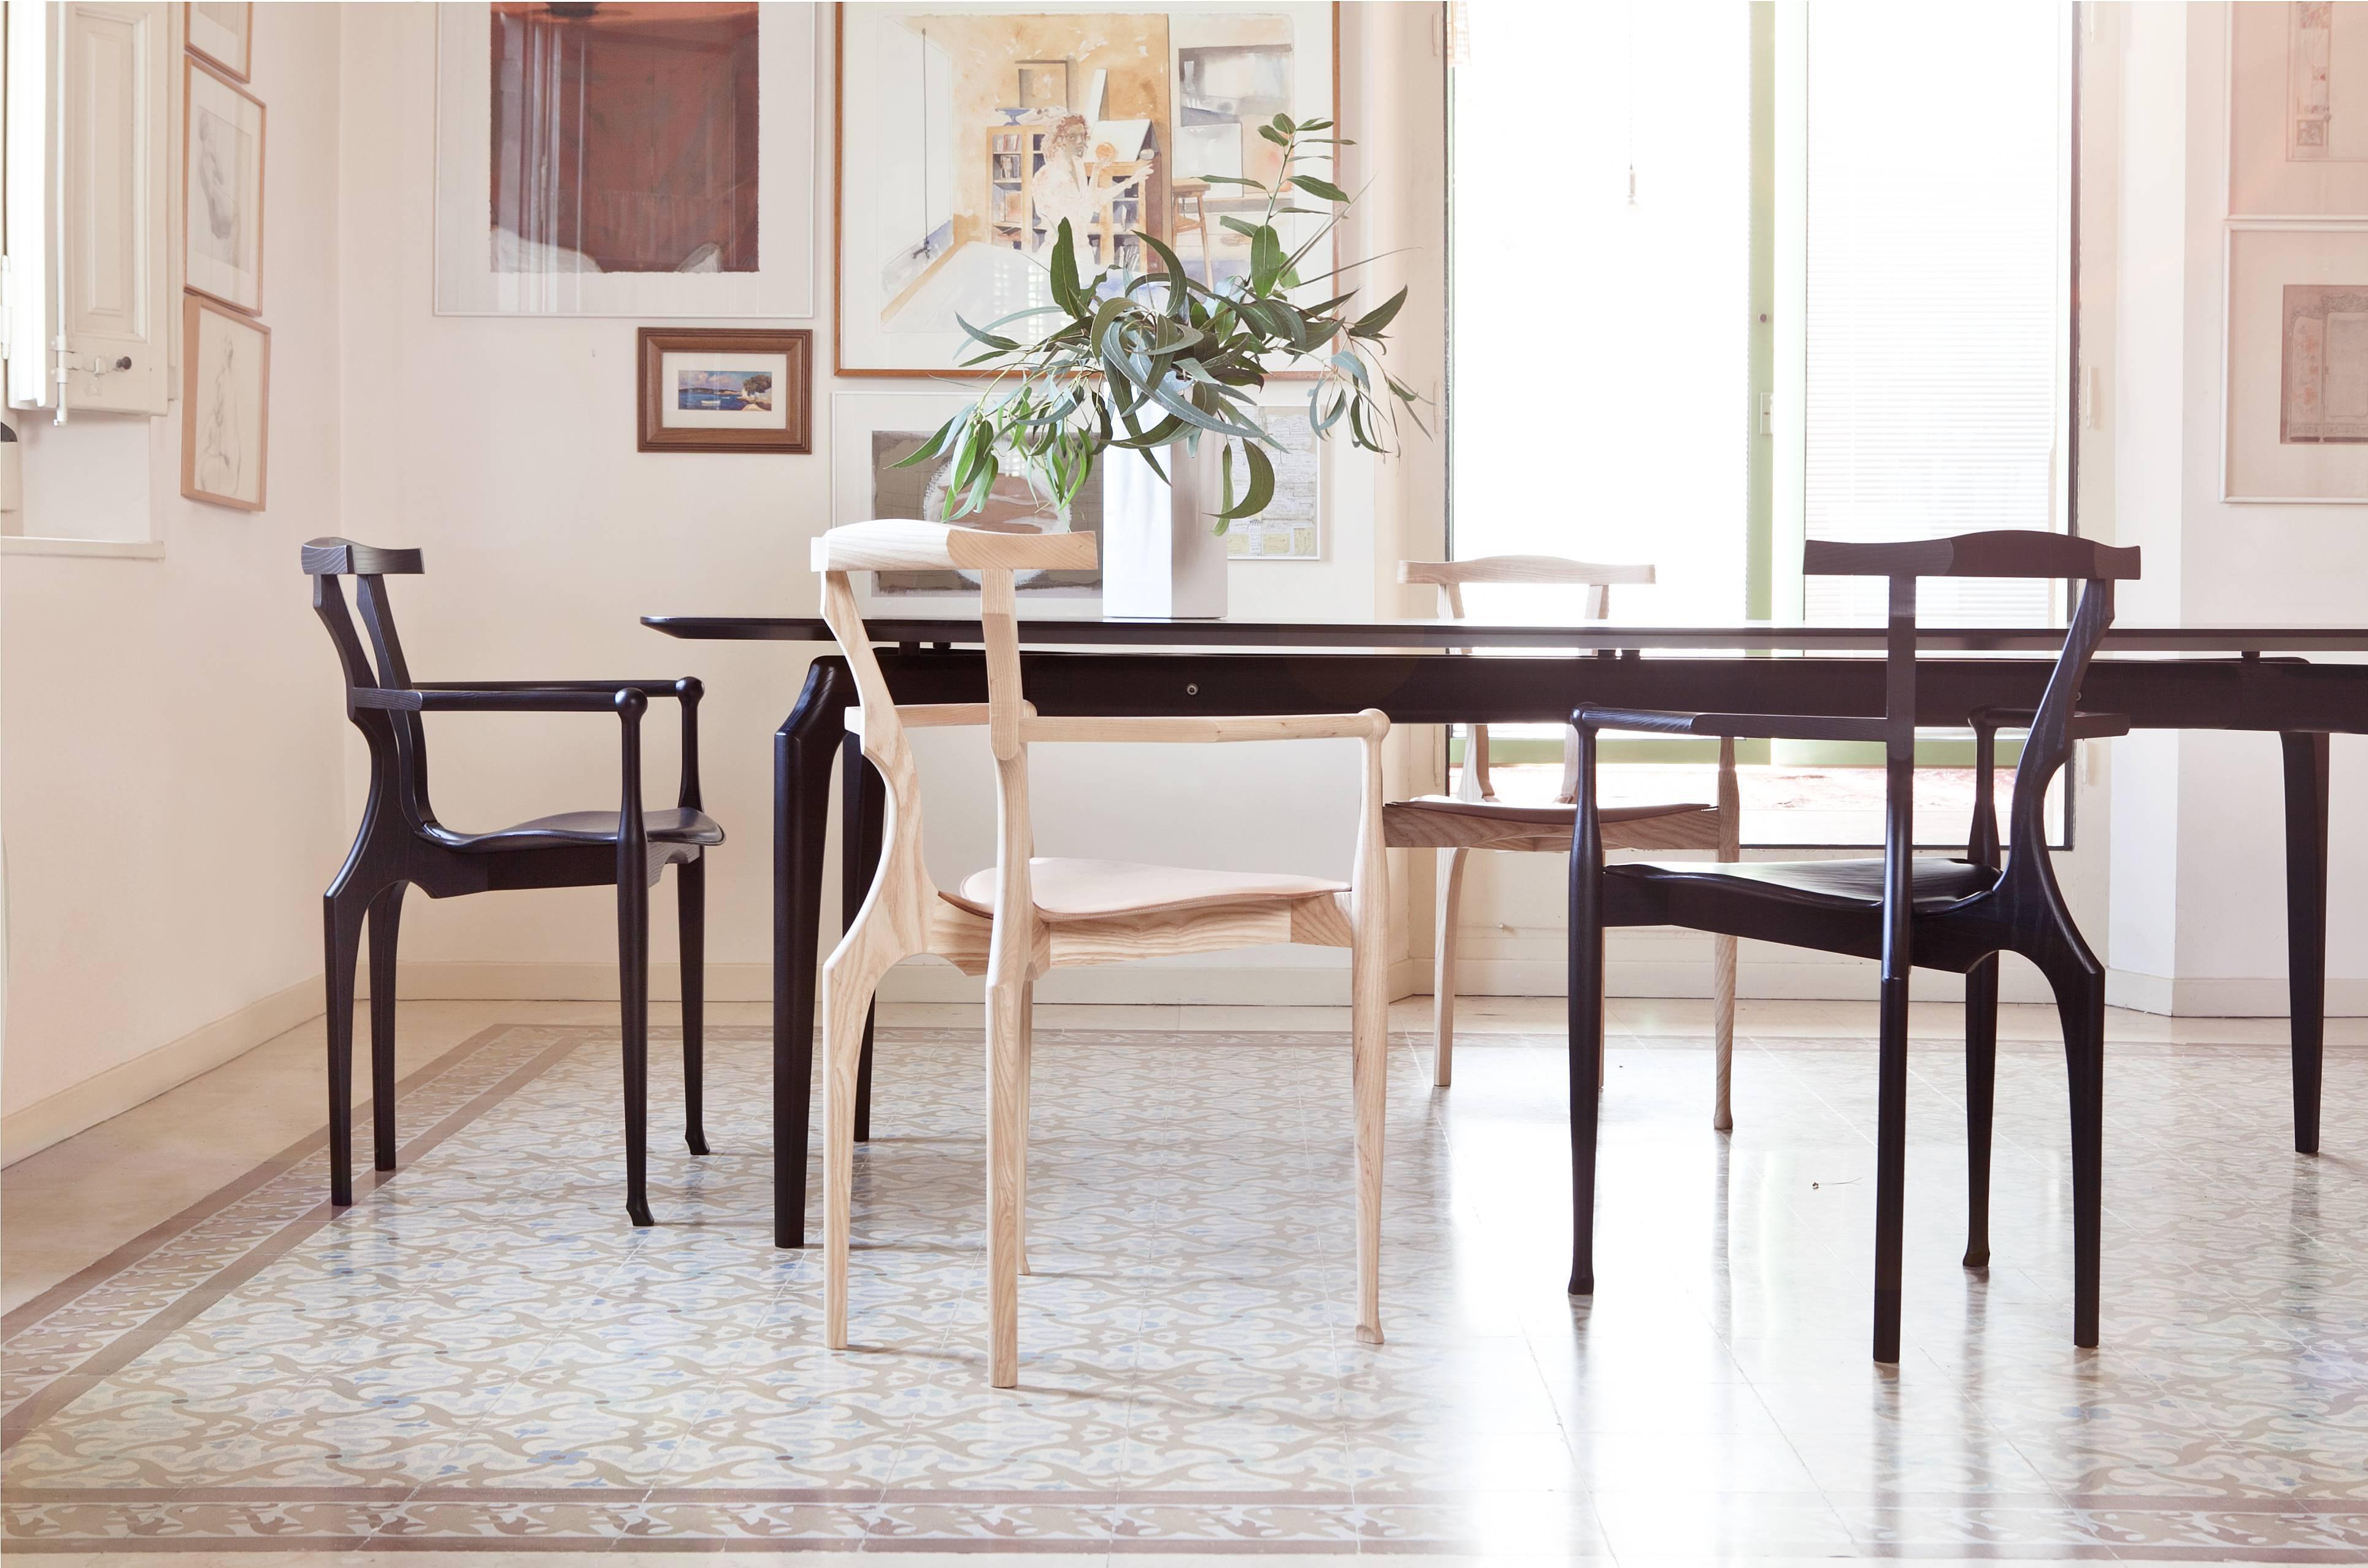 La chaise Gaulino est l'une des meilleures créations d'Oscar Tusquets. La chaise est fabriquée intégralement en bois et en cuir et est devenue une icône du design espagnol. Son nom provient des influences qui ont inspiré le designer : Antoni Gaudi